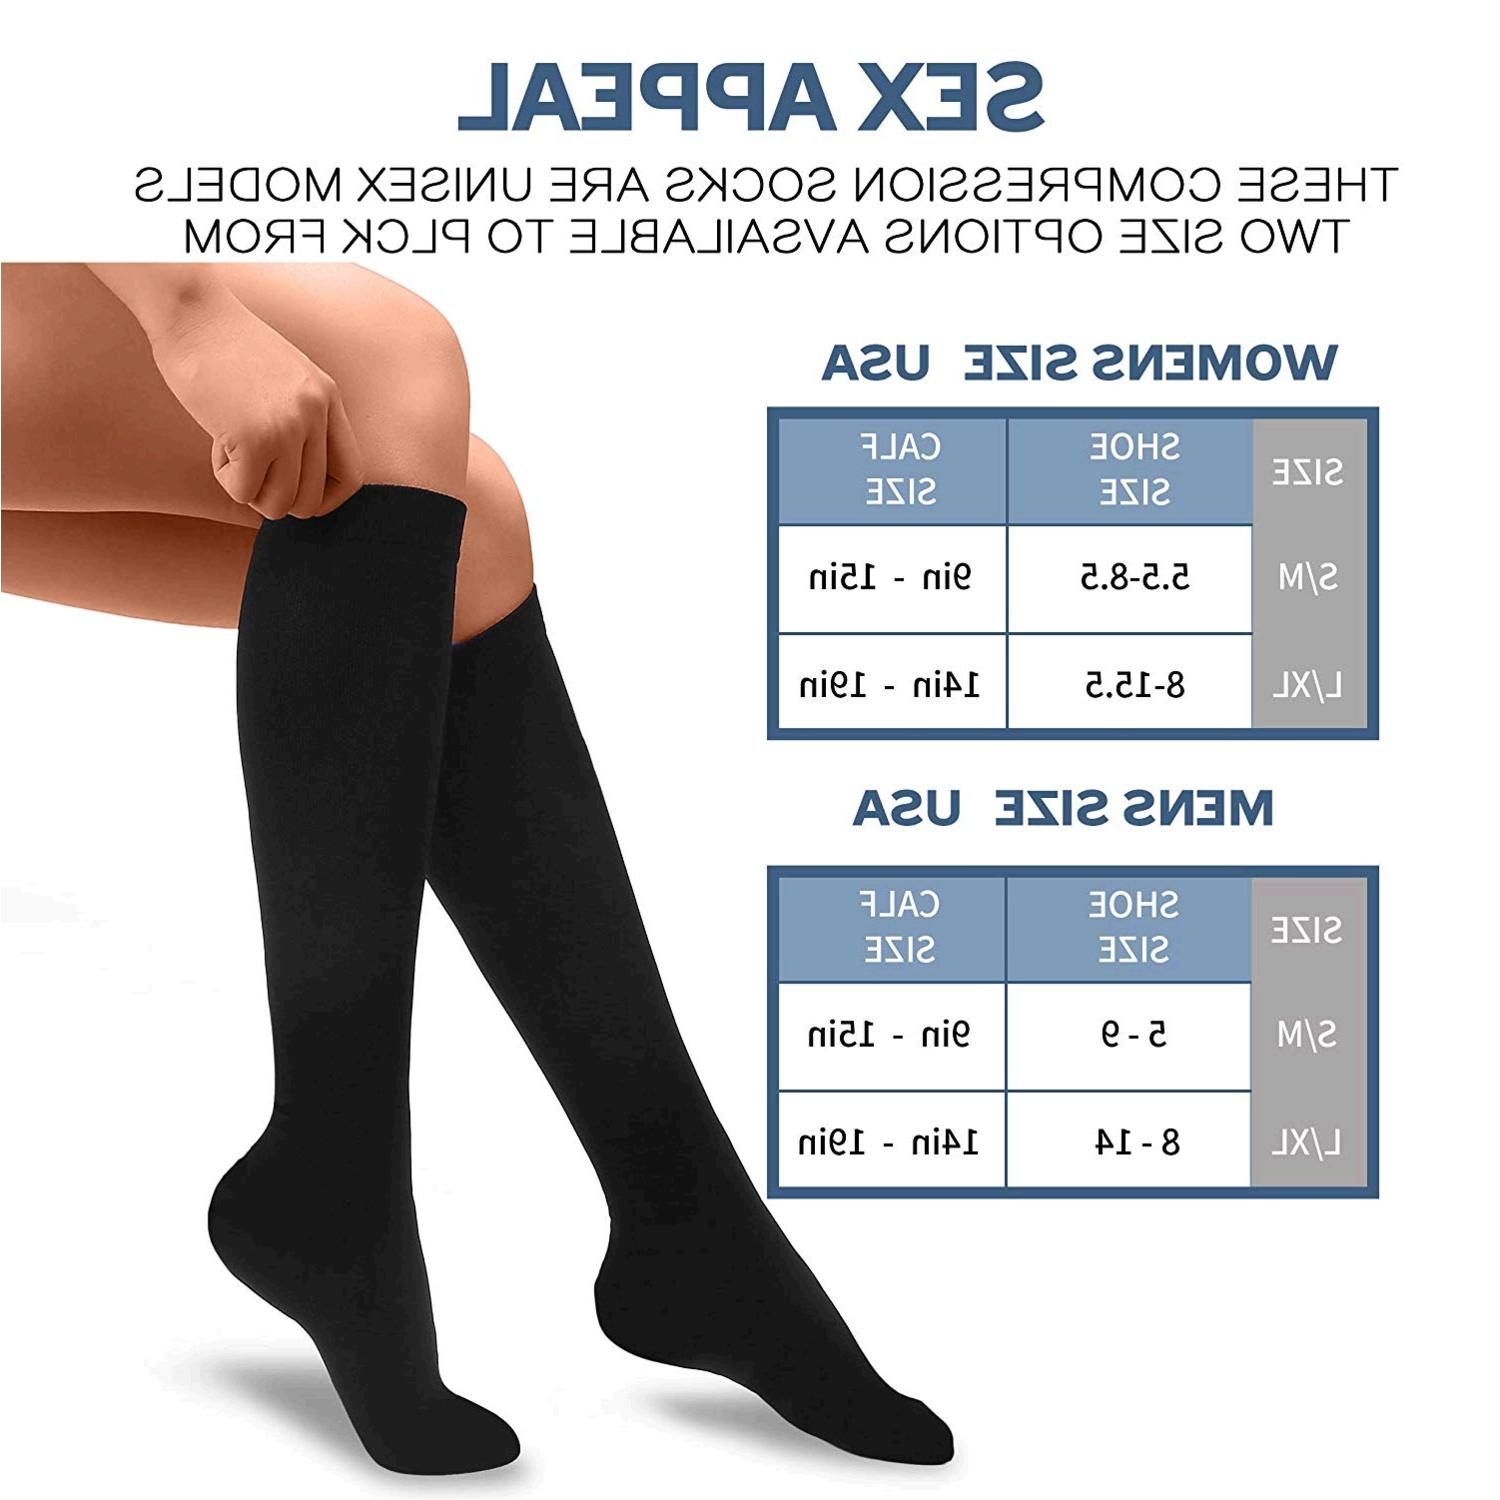 jobst compression socks target